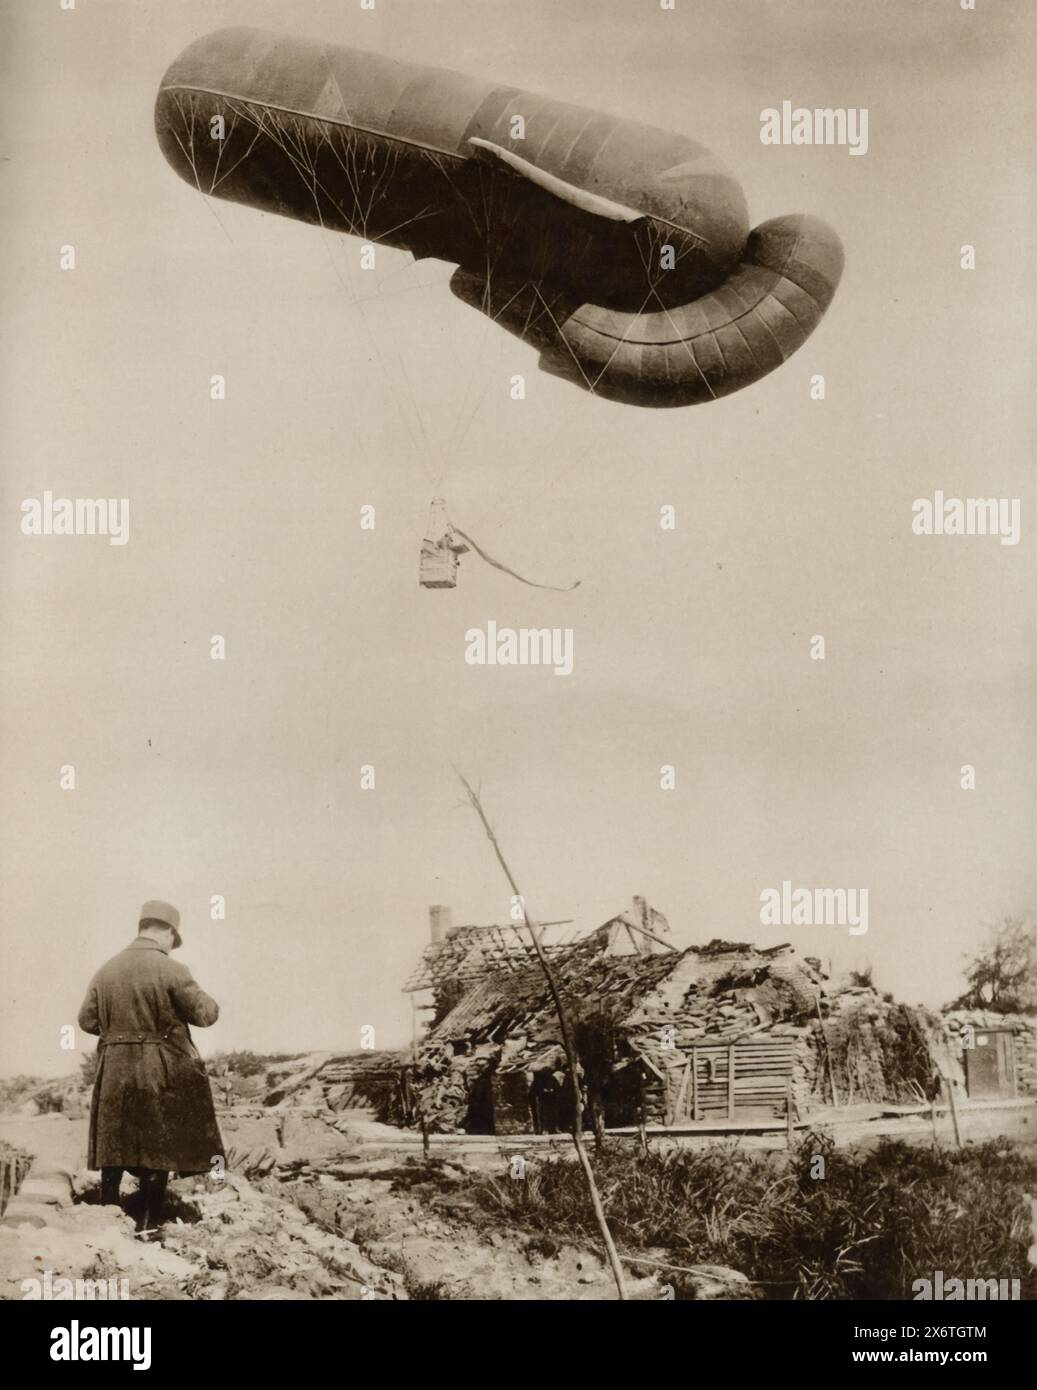 Ein Foto zeigt einen belgischen Beobachtungsballon, der während des Ersten Weltkriegs nach deutschen Artilleriepositionen aufsteigt. Beobachtungsballons waren für die Aufklärung von entscheidender Bedeutung und boten einen hohen Aussichtspunkt, um feindliche Positionen zu erkennen und Artilleriefeuer zu steuern. Diese Ballons, die oft mit Wasserstoffgas verbunden und gefüllt waren, wurden von beiden Seiten ausgiebig genutzt, um einen strategischen Vorteil zu erlangen. Trotz ihrer Bedeutung waren Beobachtungsballons anfällig für feindliche Flugzeuge und Bodenfeuer, was zur Entwicklung spezialisierter Ballonsprengtaktiken durch Kampfpiloten führte. Stockfoto